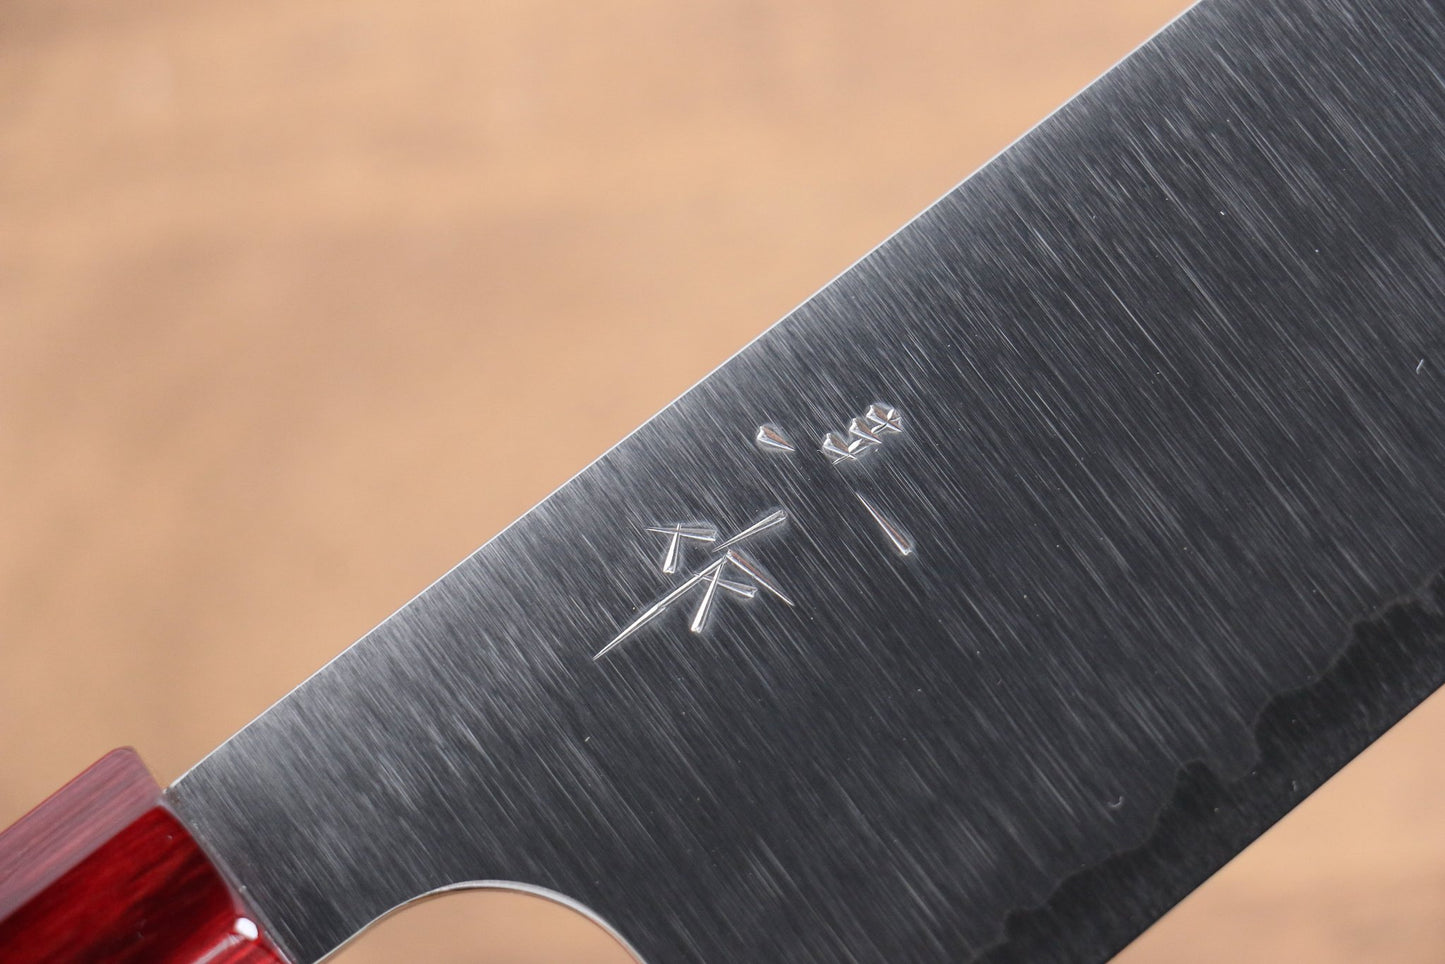 Marke Kei Kobayashi R2/SG2 Santoku-Mehrzweckmesser Japanisches Messer 170 mm rot lackierter Griff